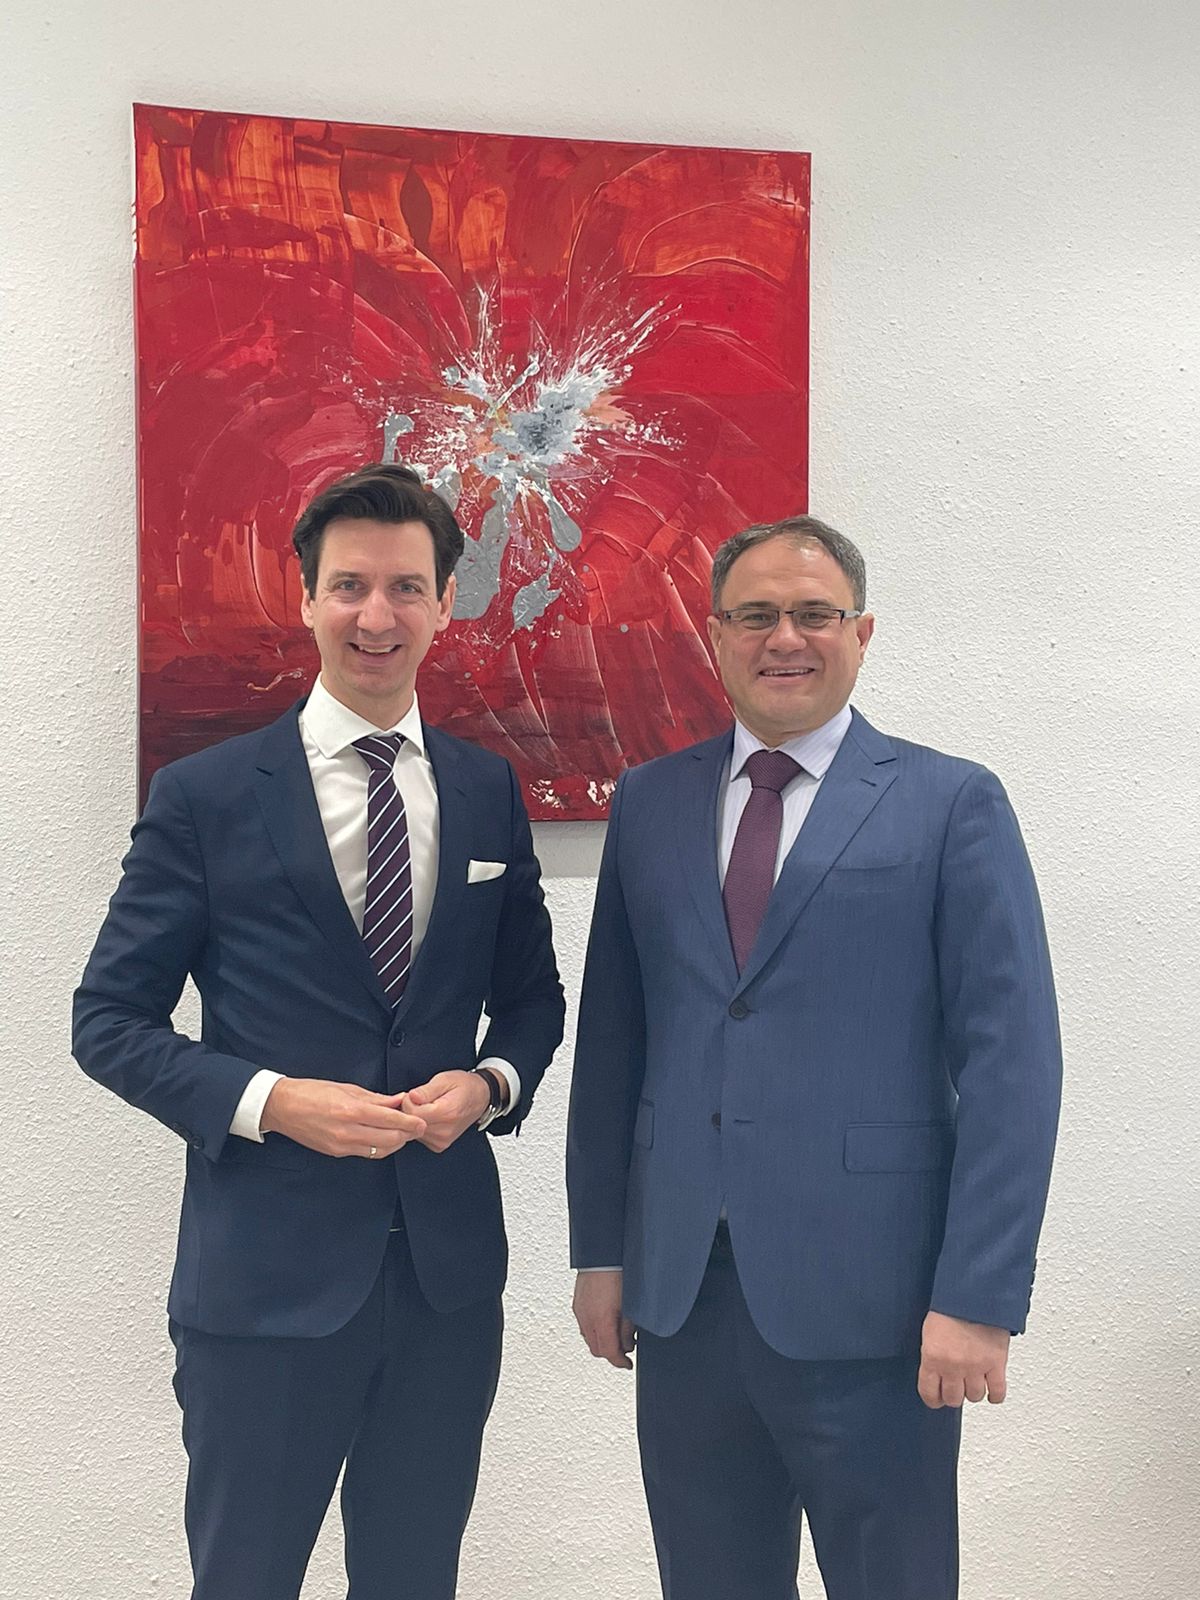 Визит заместителя министра иностранных дел РК в Вену  способствует дальнейшему укреплению отношений с Австрией